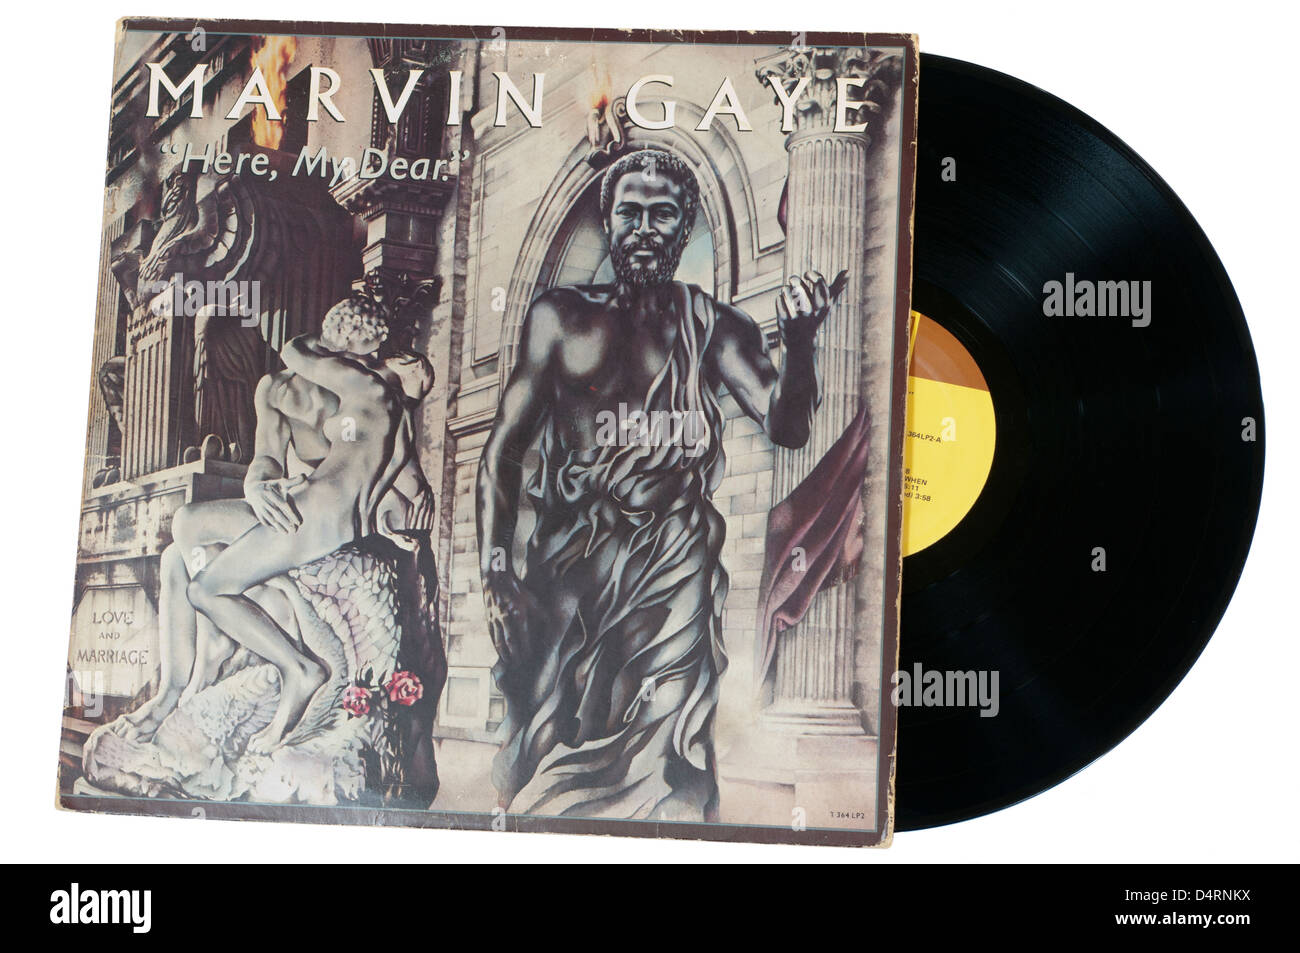 Marvin Gaye hier meine Liebe Vinyl Record LP Stockfoto